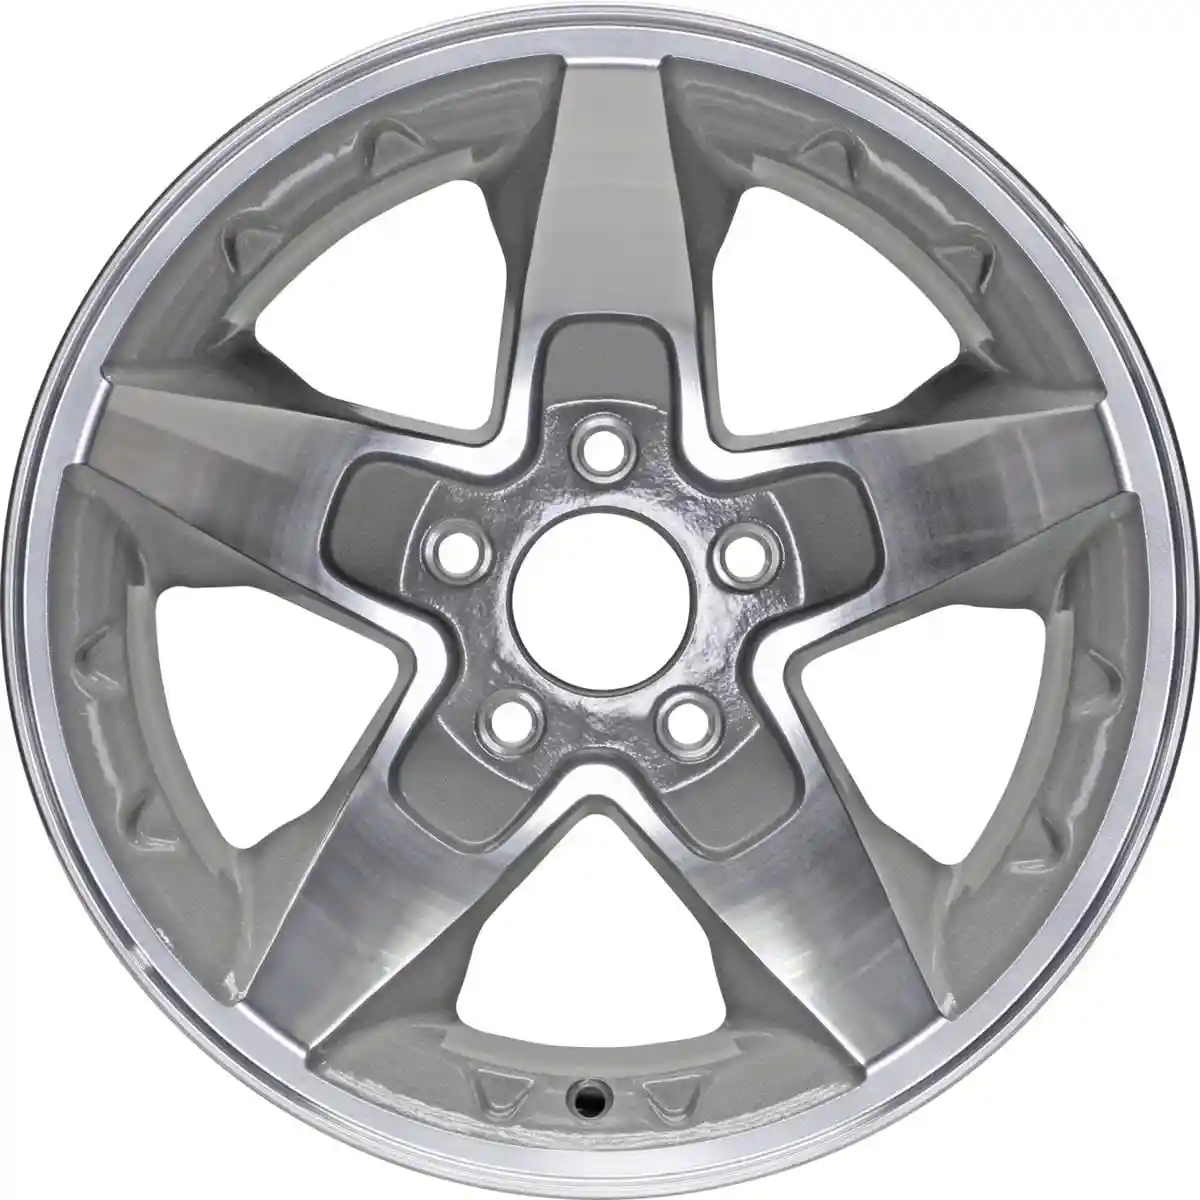 New 16 Inch Aluminum Wheel Rim